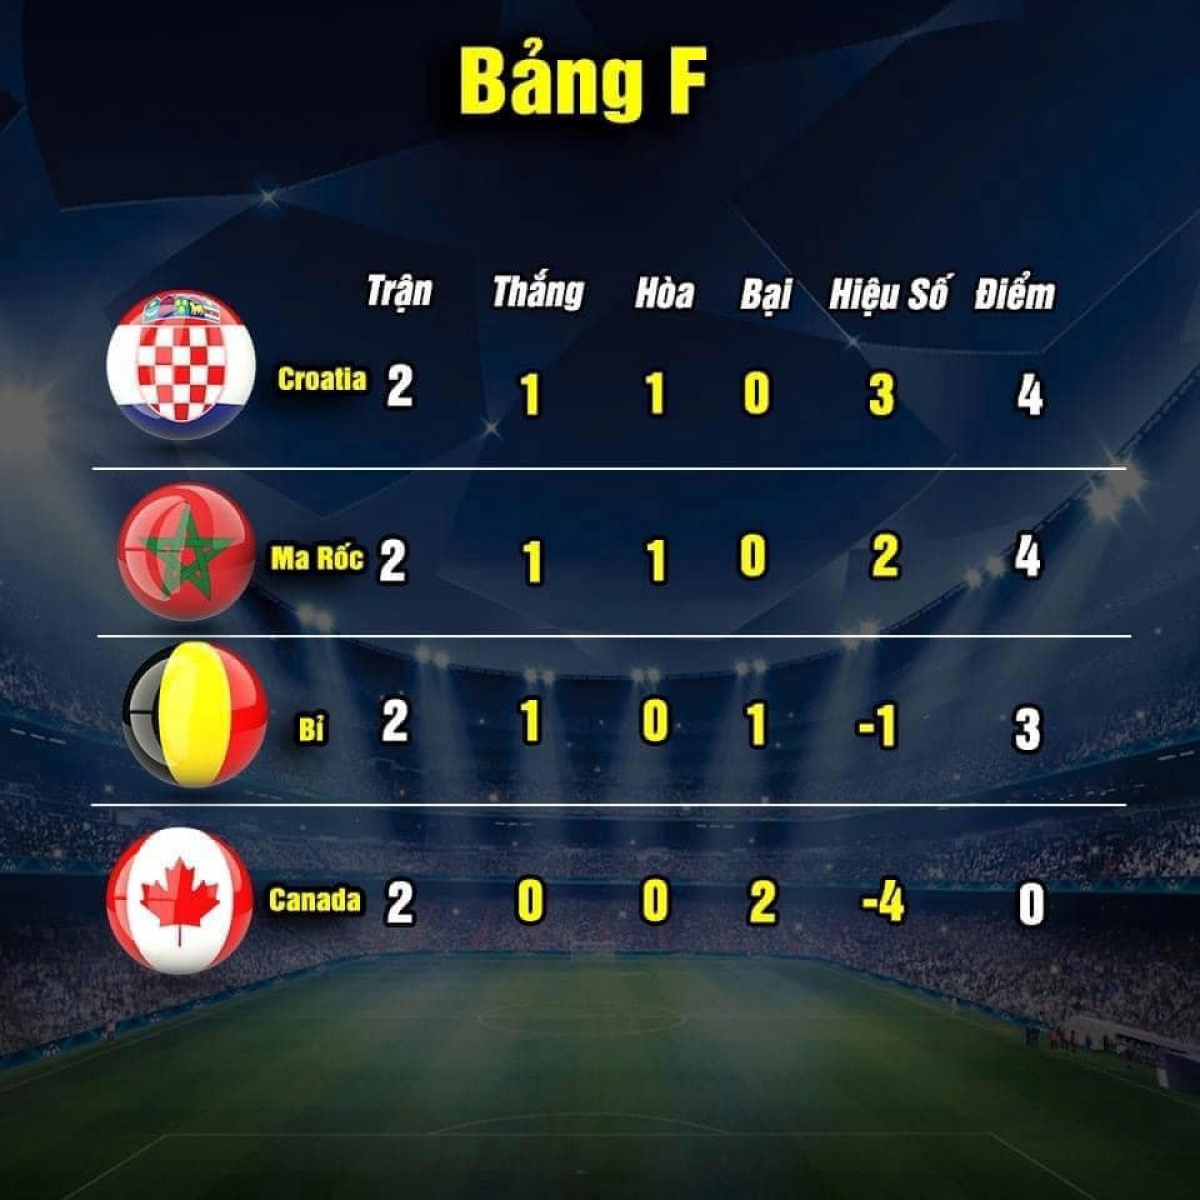 Cục diện bảng F sau hai lượt trận (ảnh: Thethao.vn) 